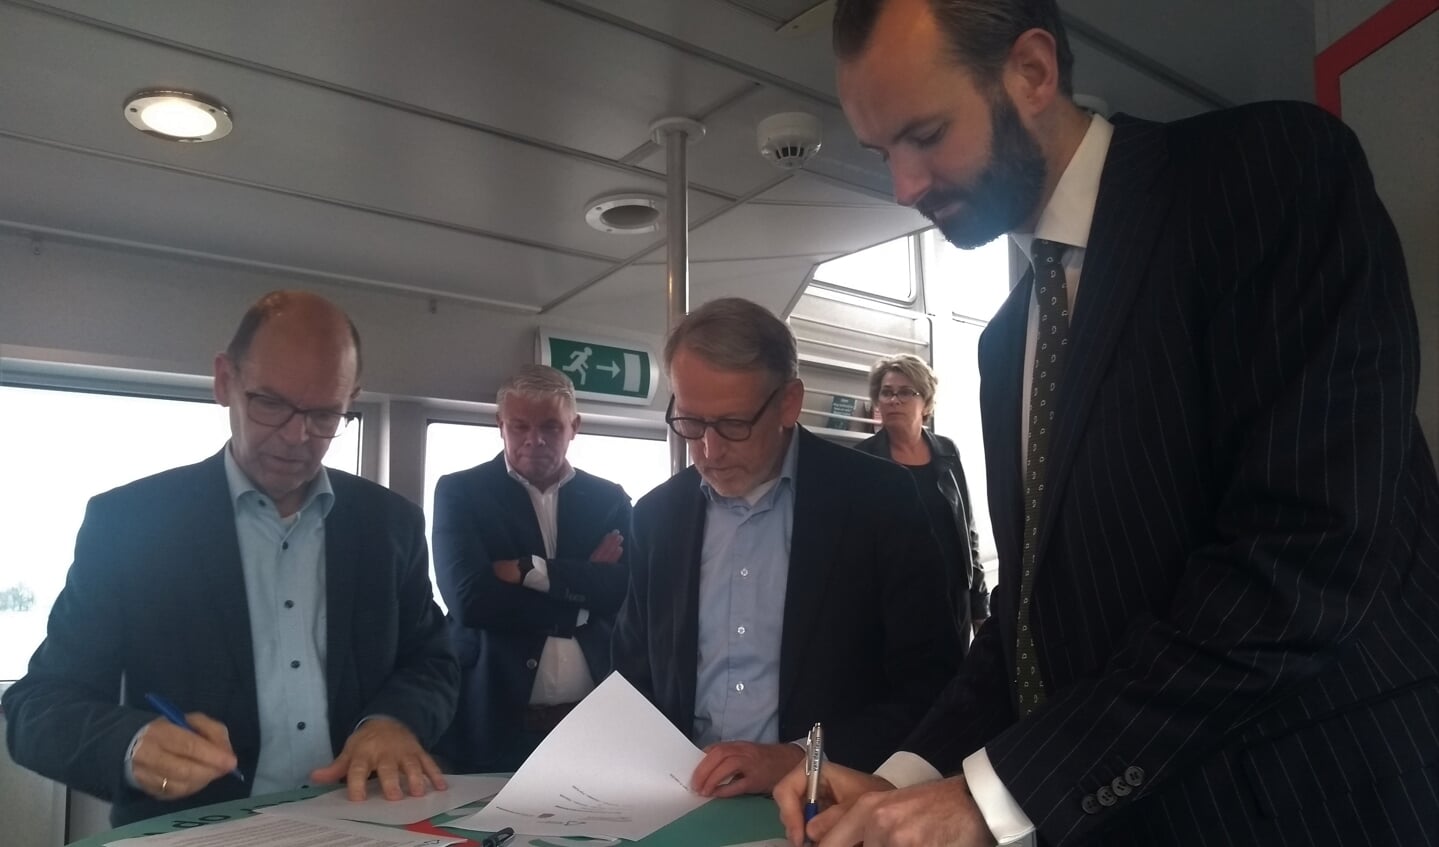 De wethouders Joost van der Geest, Theo Boerman en Hans Tanis zetten hun handtekening onder de samenwerkingsovereenkomst